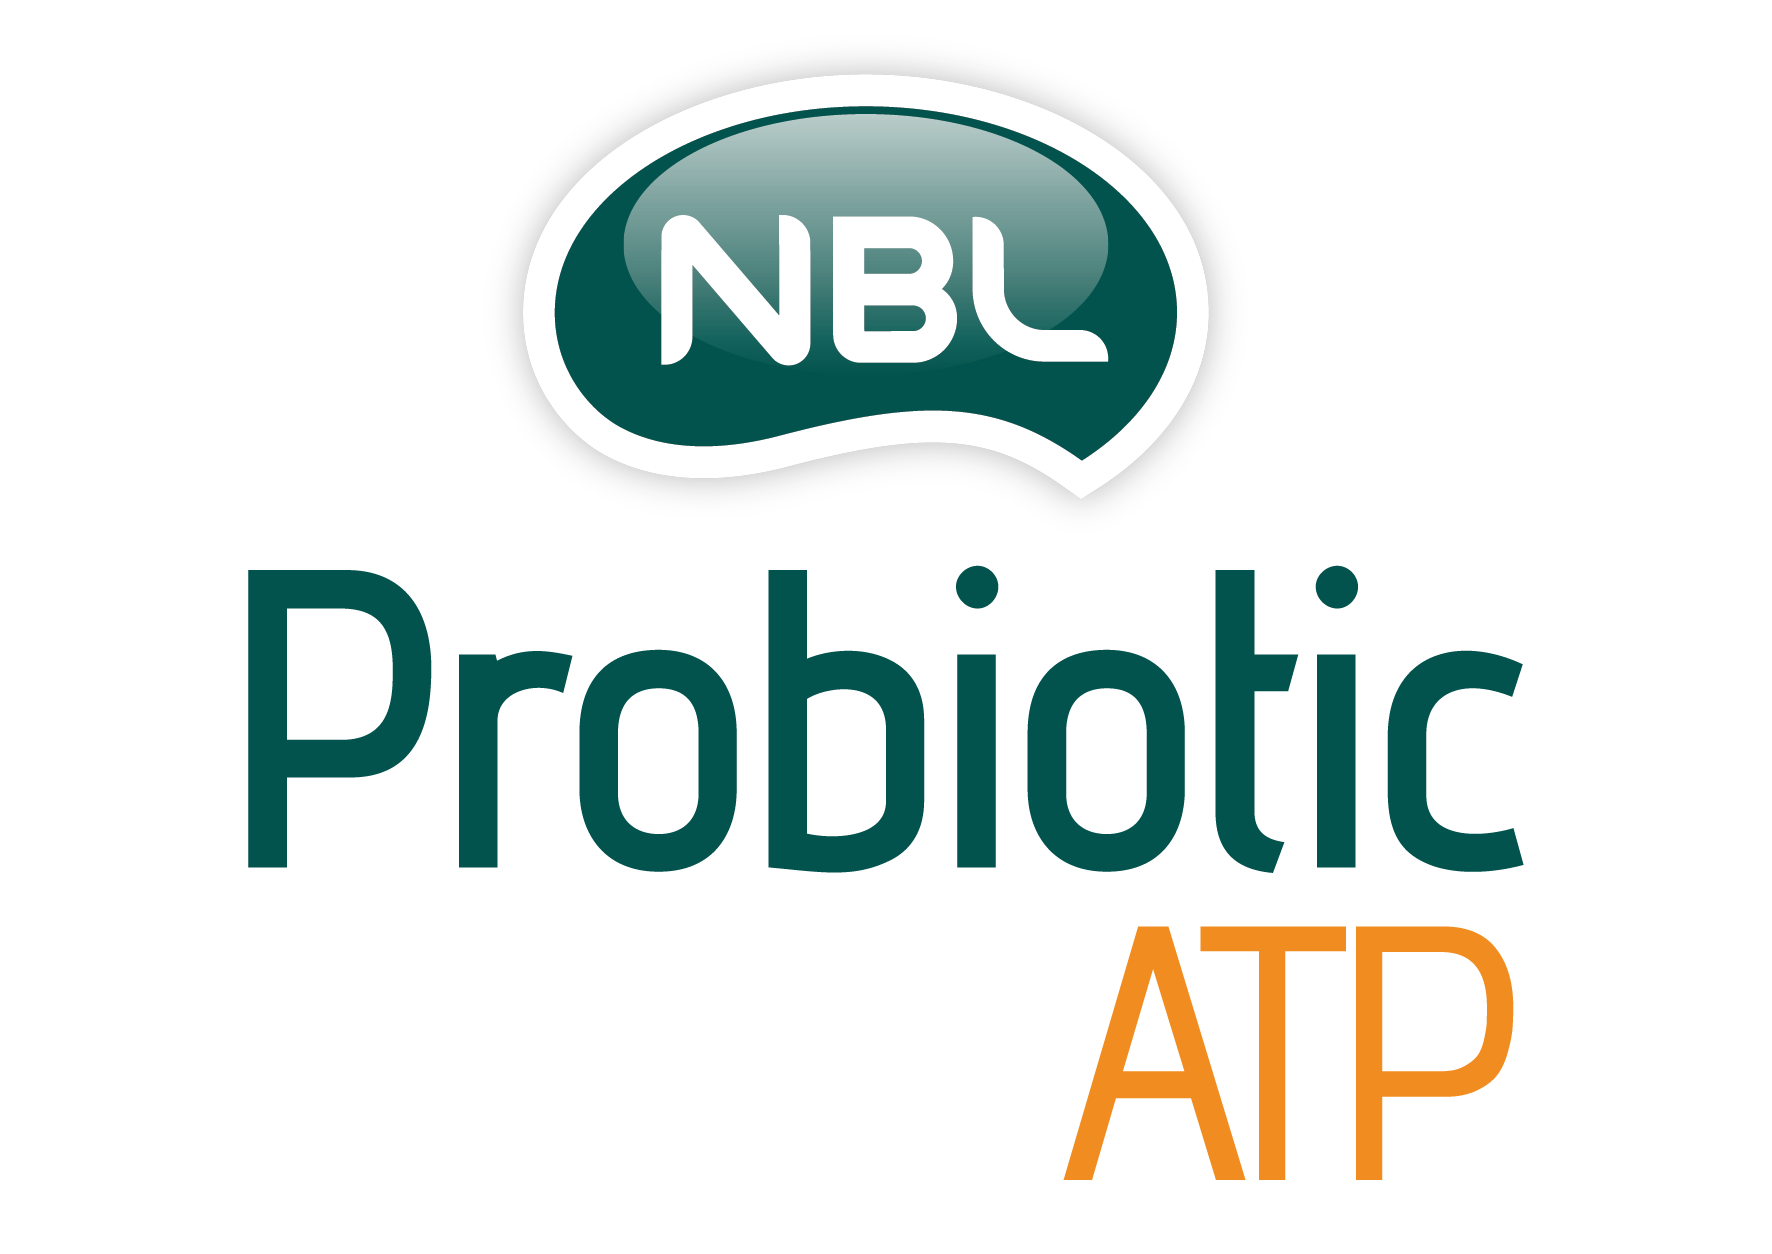 NBL Probiotic ATP-01